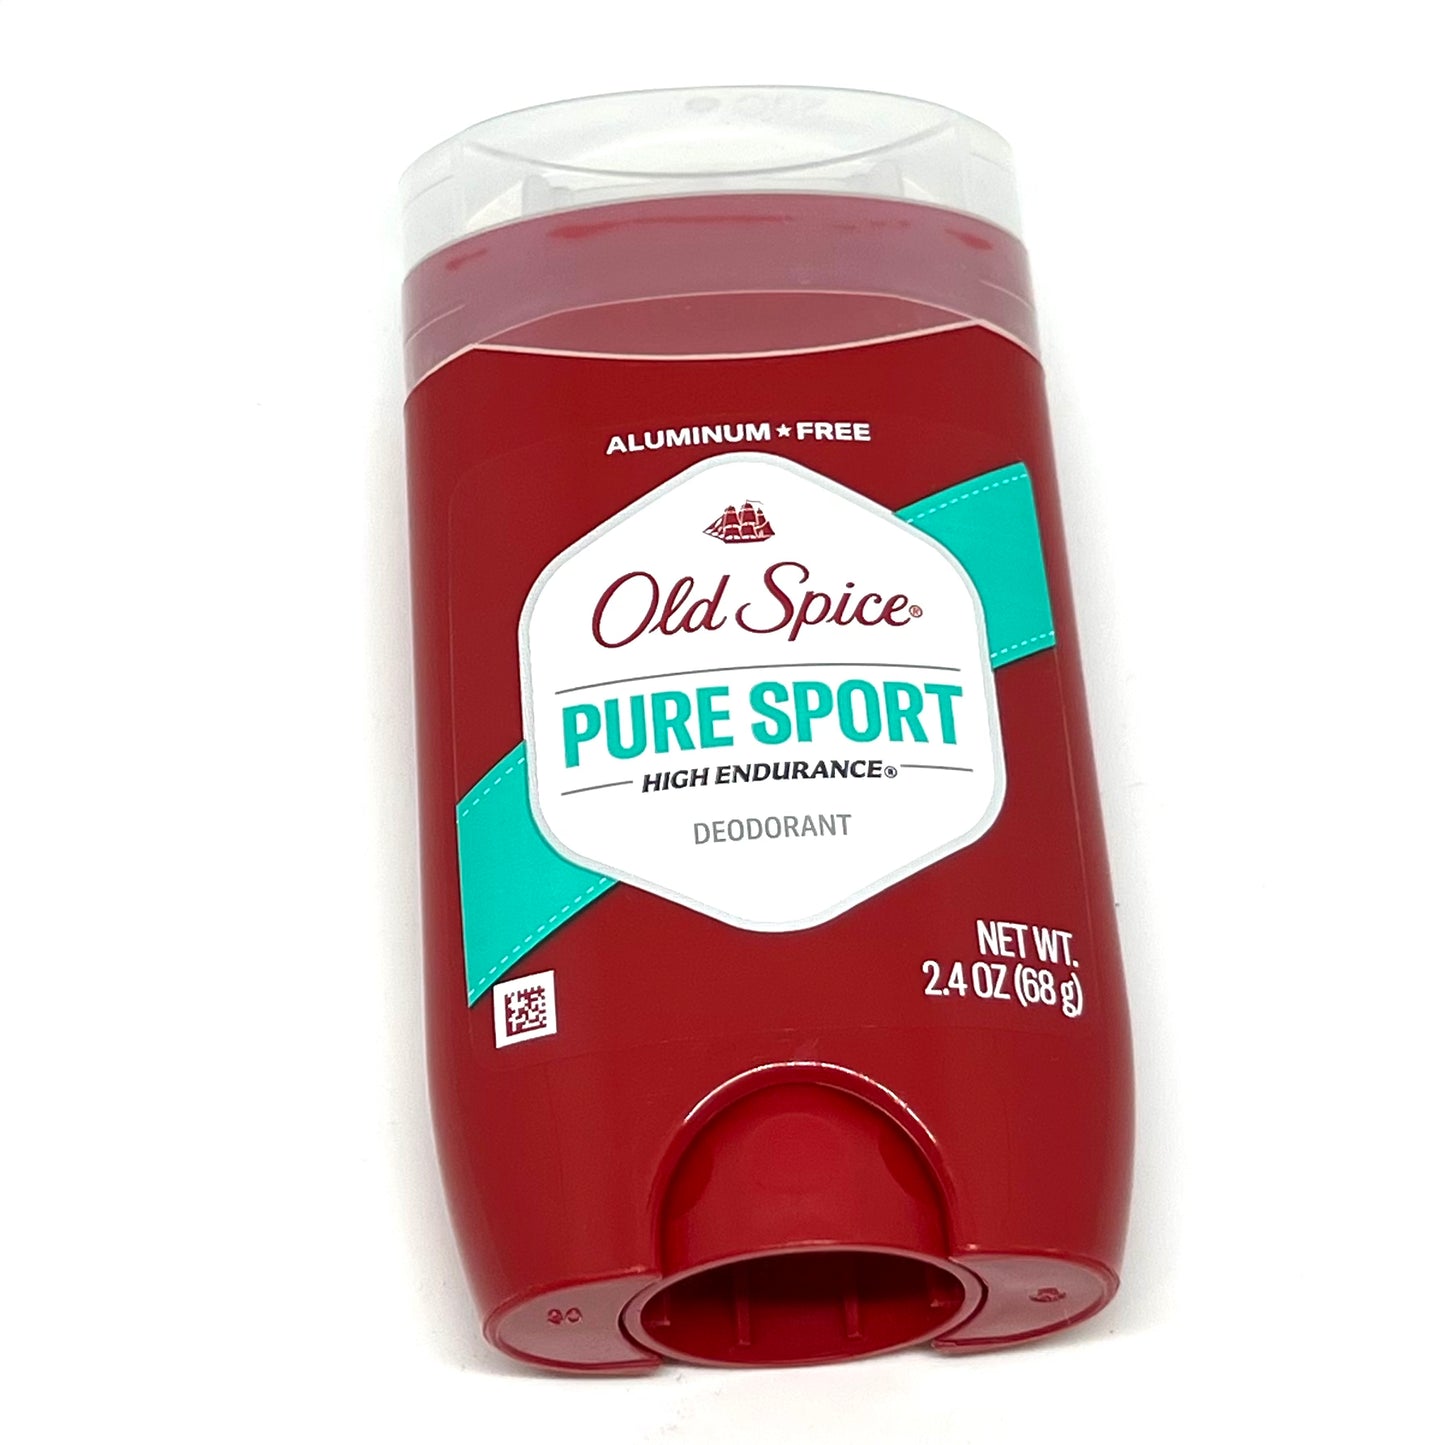 Old Spice オールドスパイス ピュアスポーツ デオドラント Pure Sports